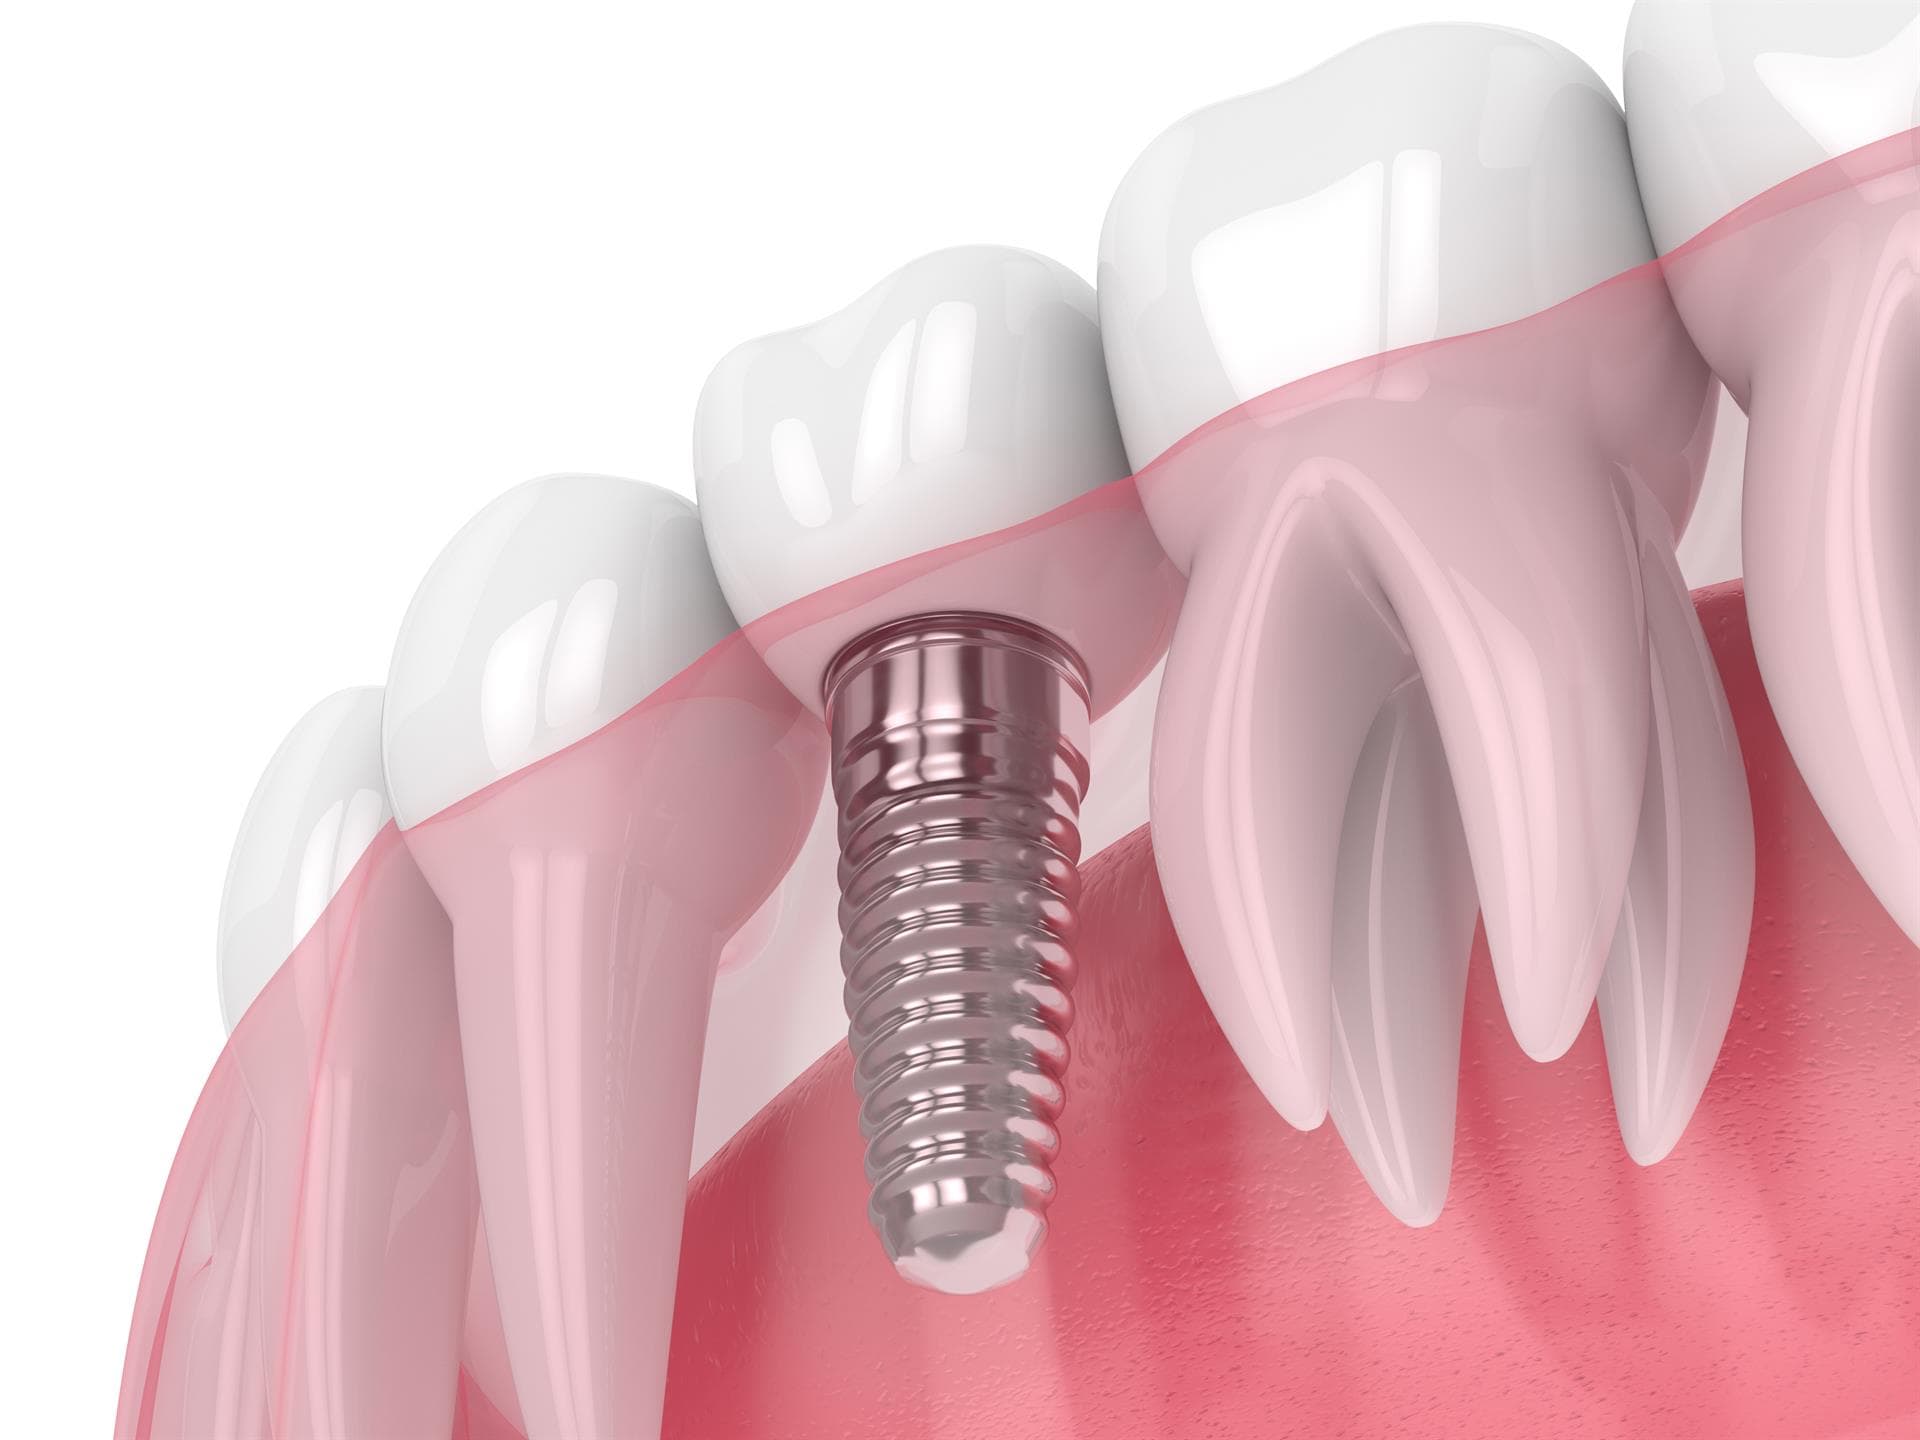  Técnicas en implantología oral